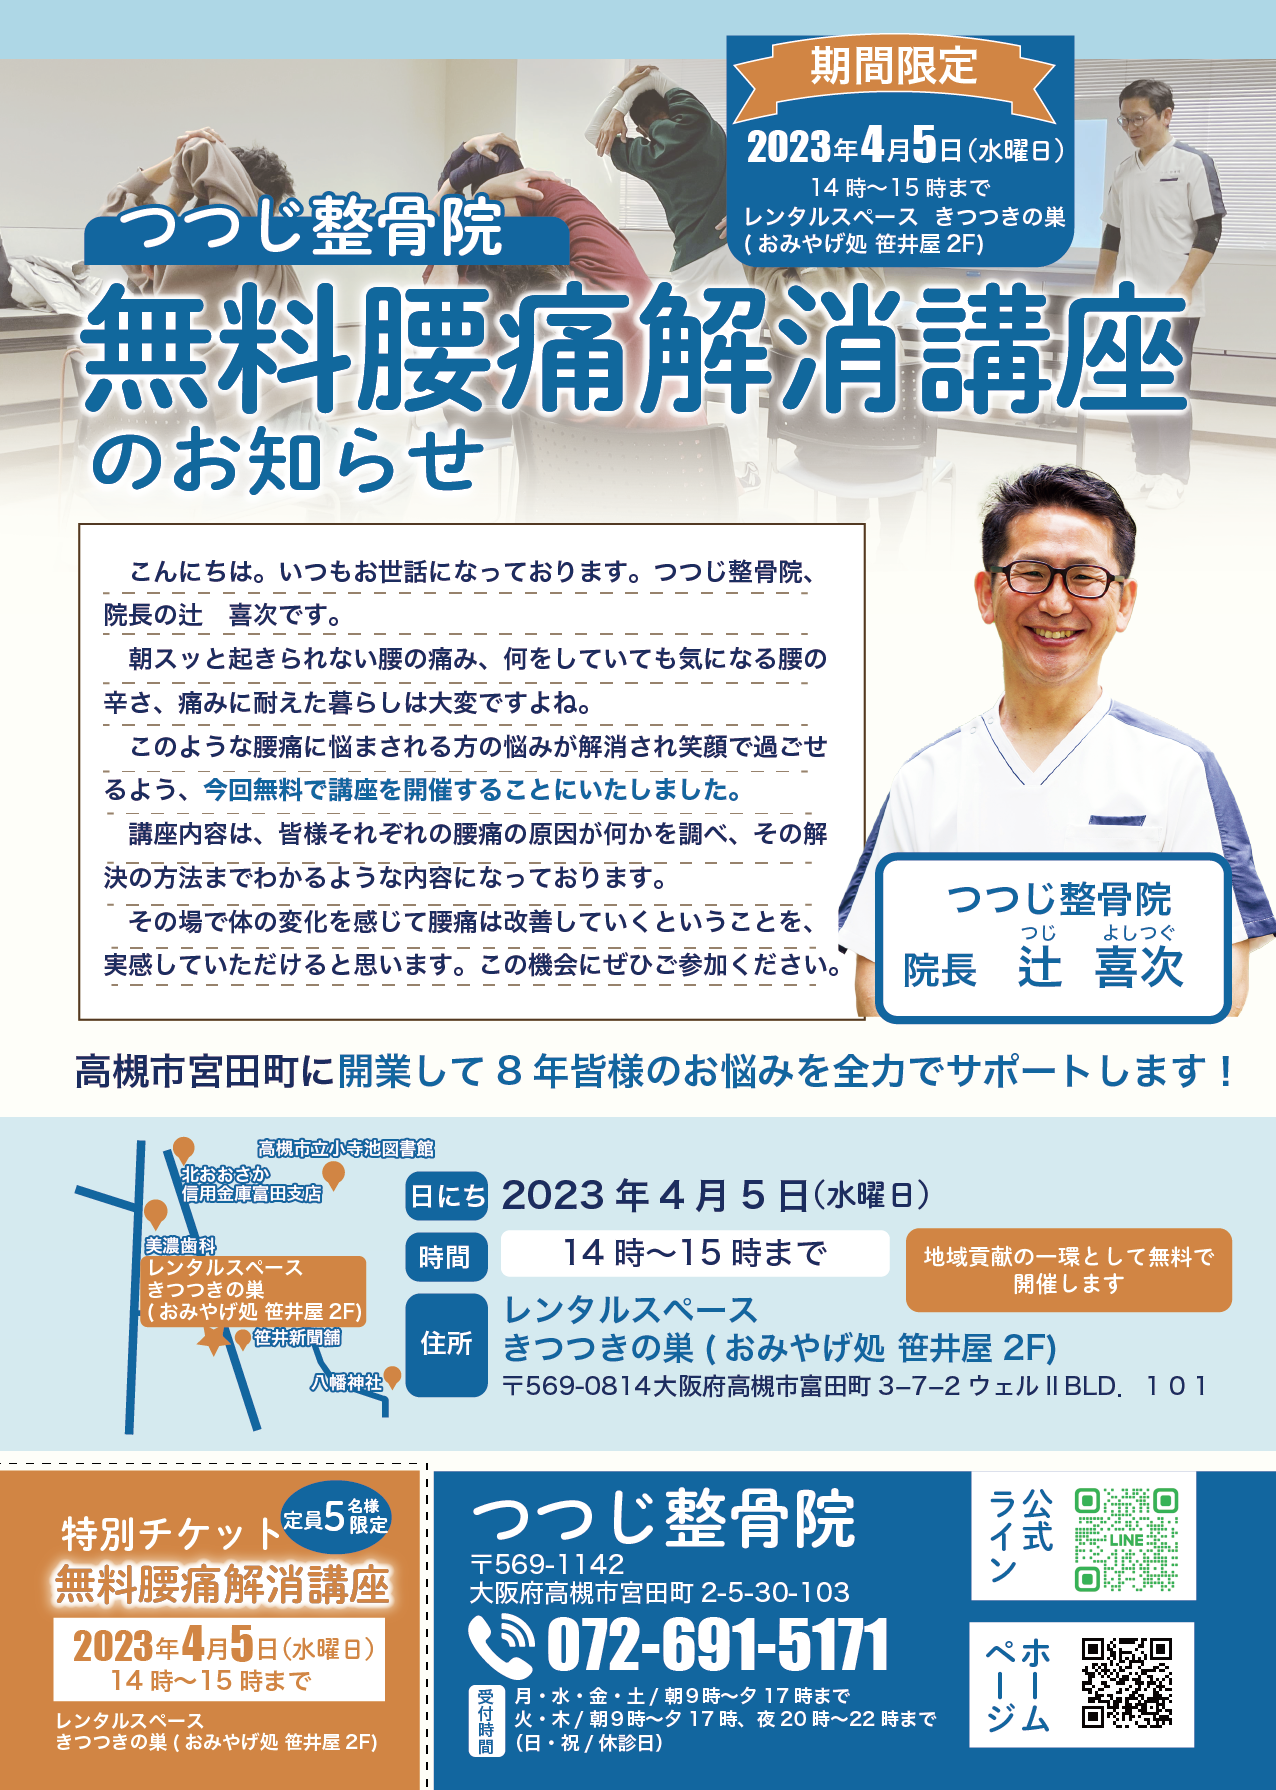 4月5日水曜日に摂津富田で【無料腰痛解消講座】を開催します